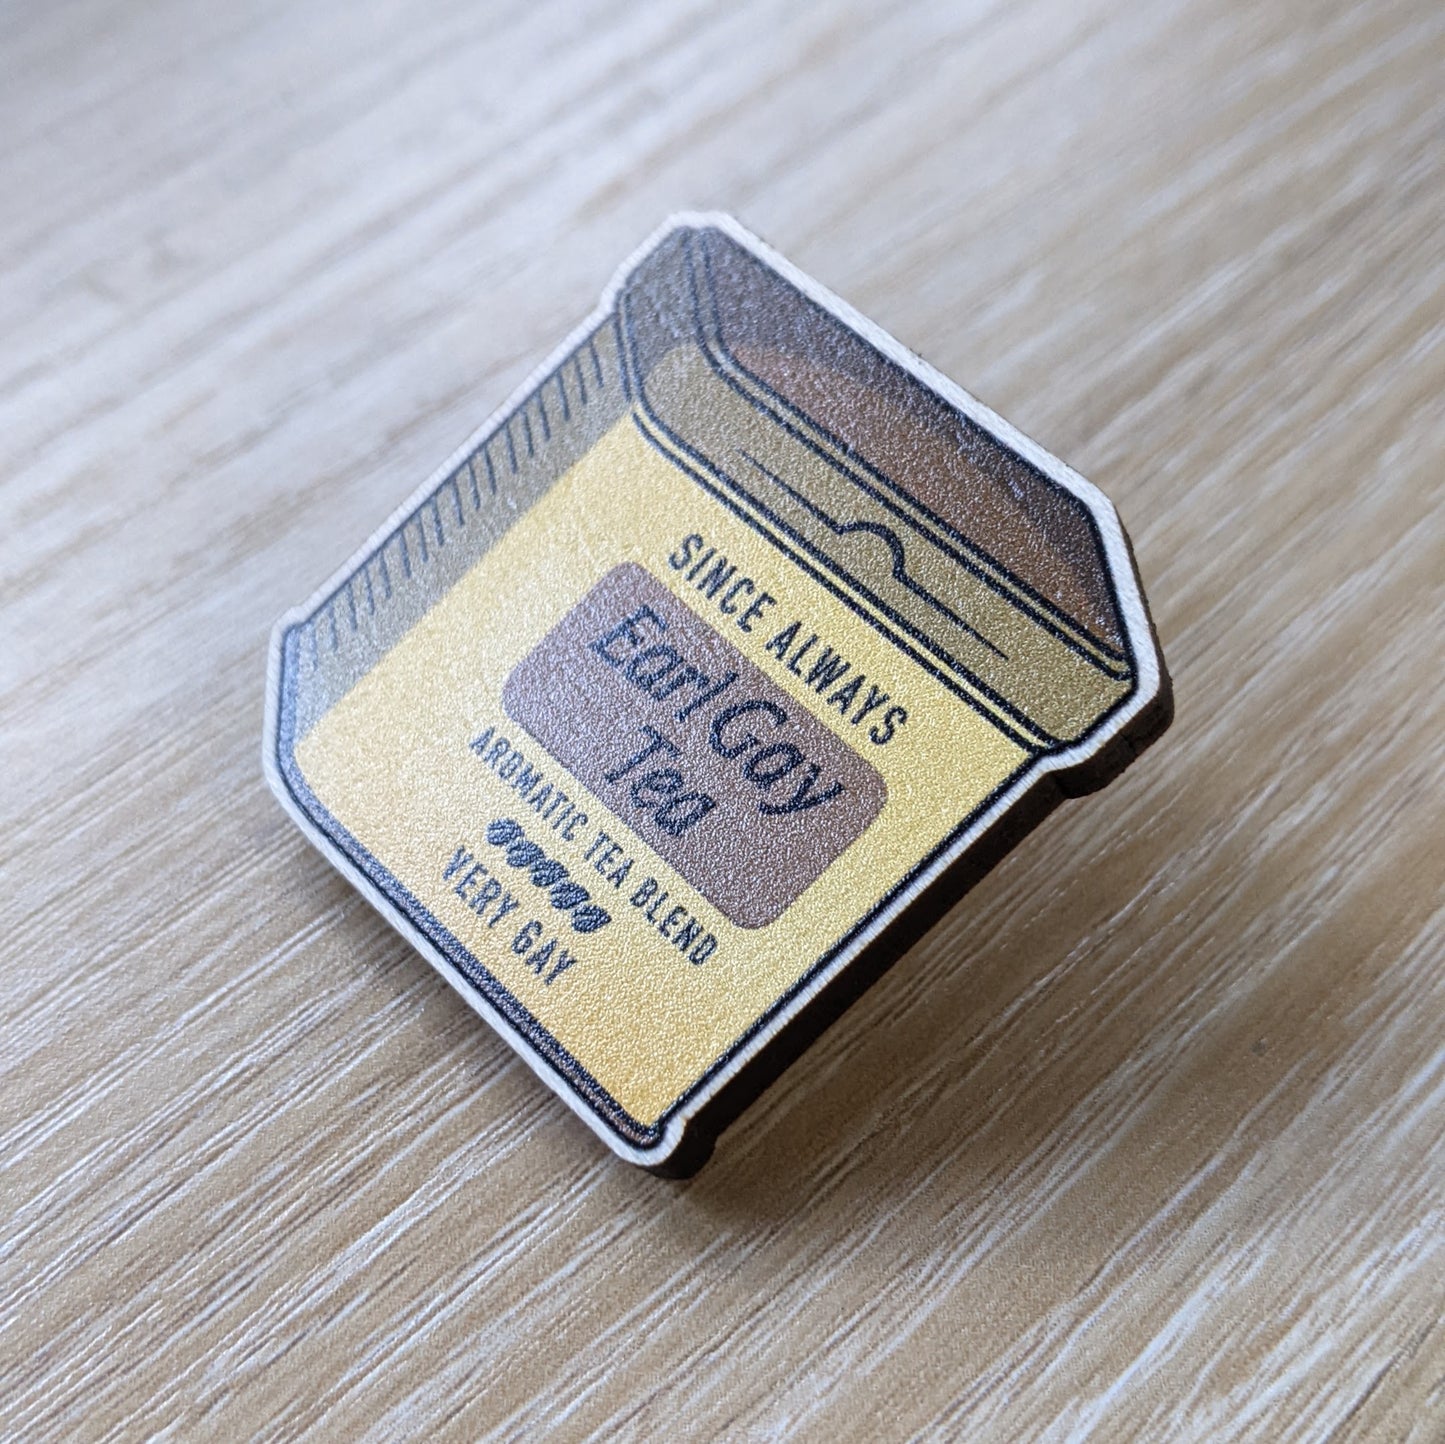 Earl Gay Tea | Wooden Badge